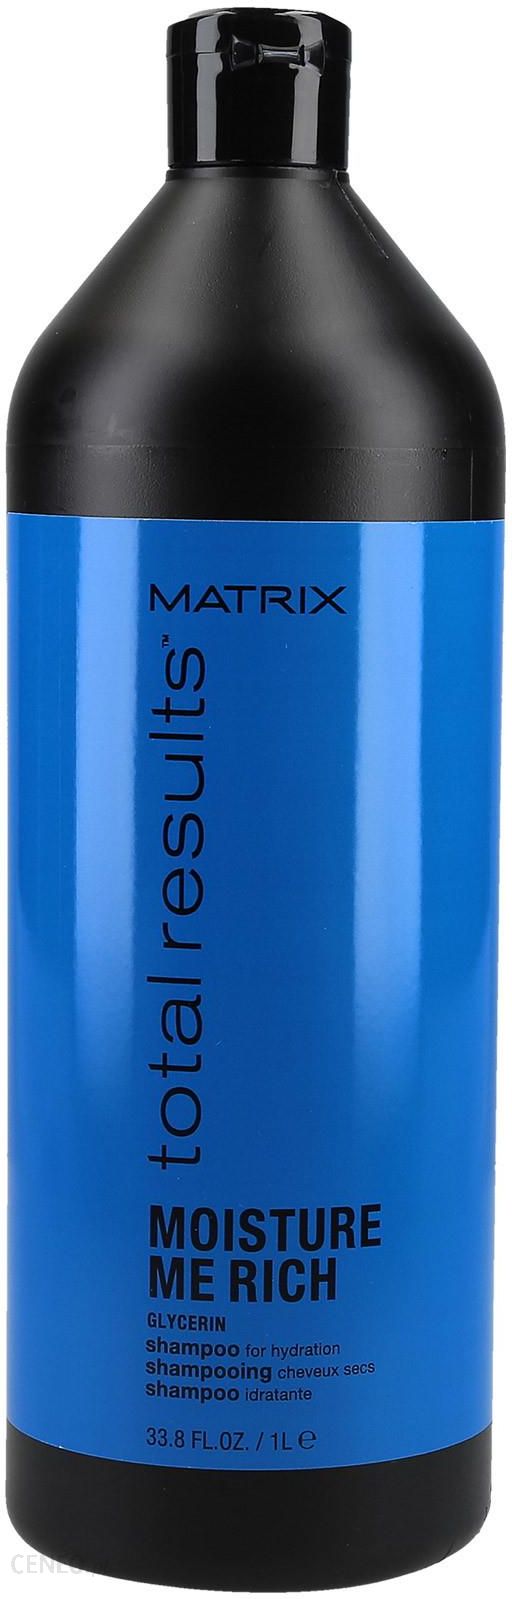 matrix moisture szampon nawilżający wizaz